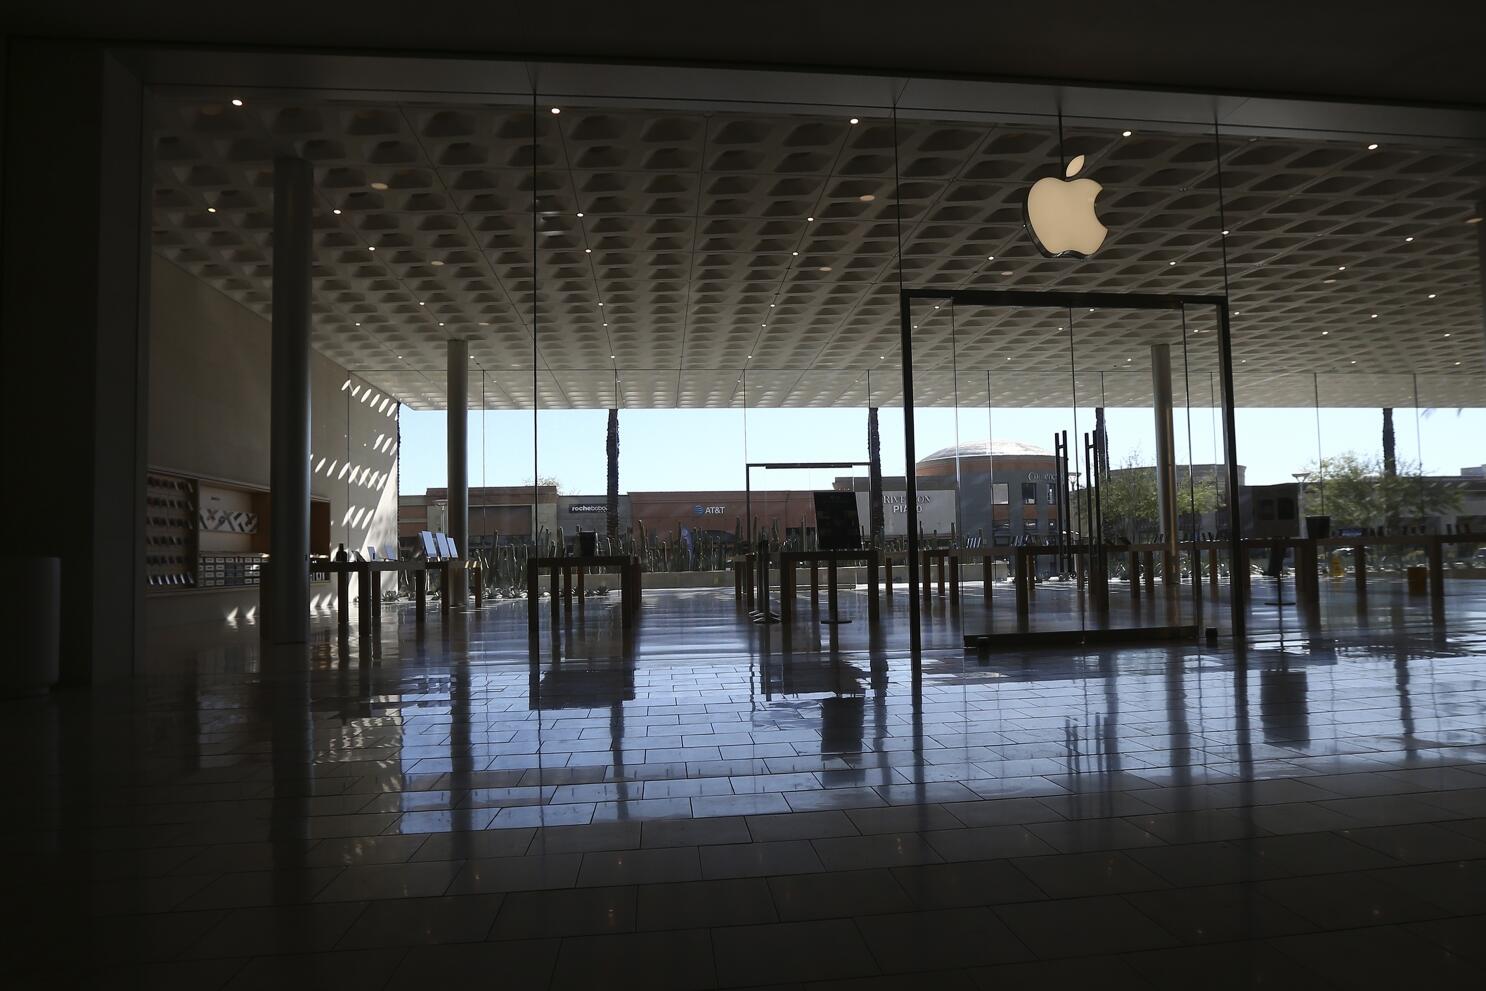 Scottsdale Quarter - Apple Store - Apple